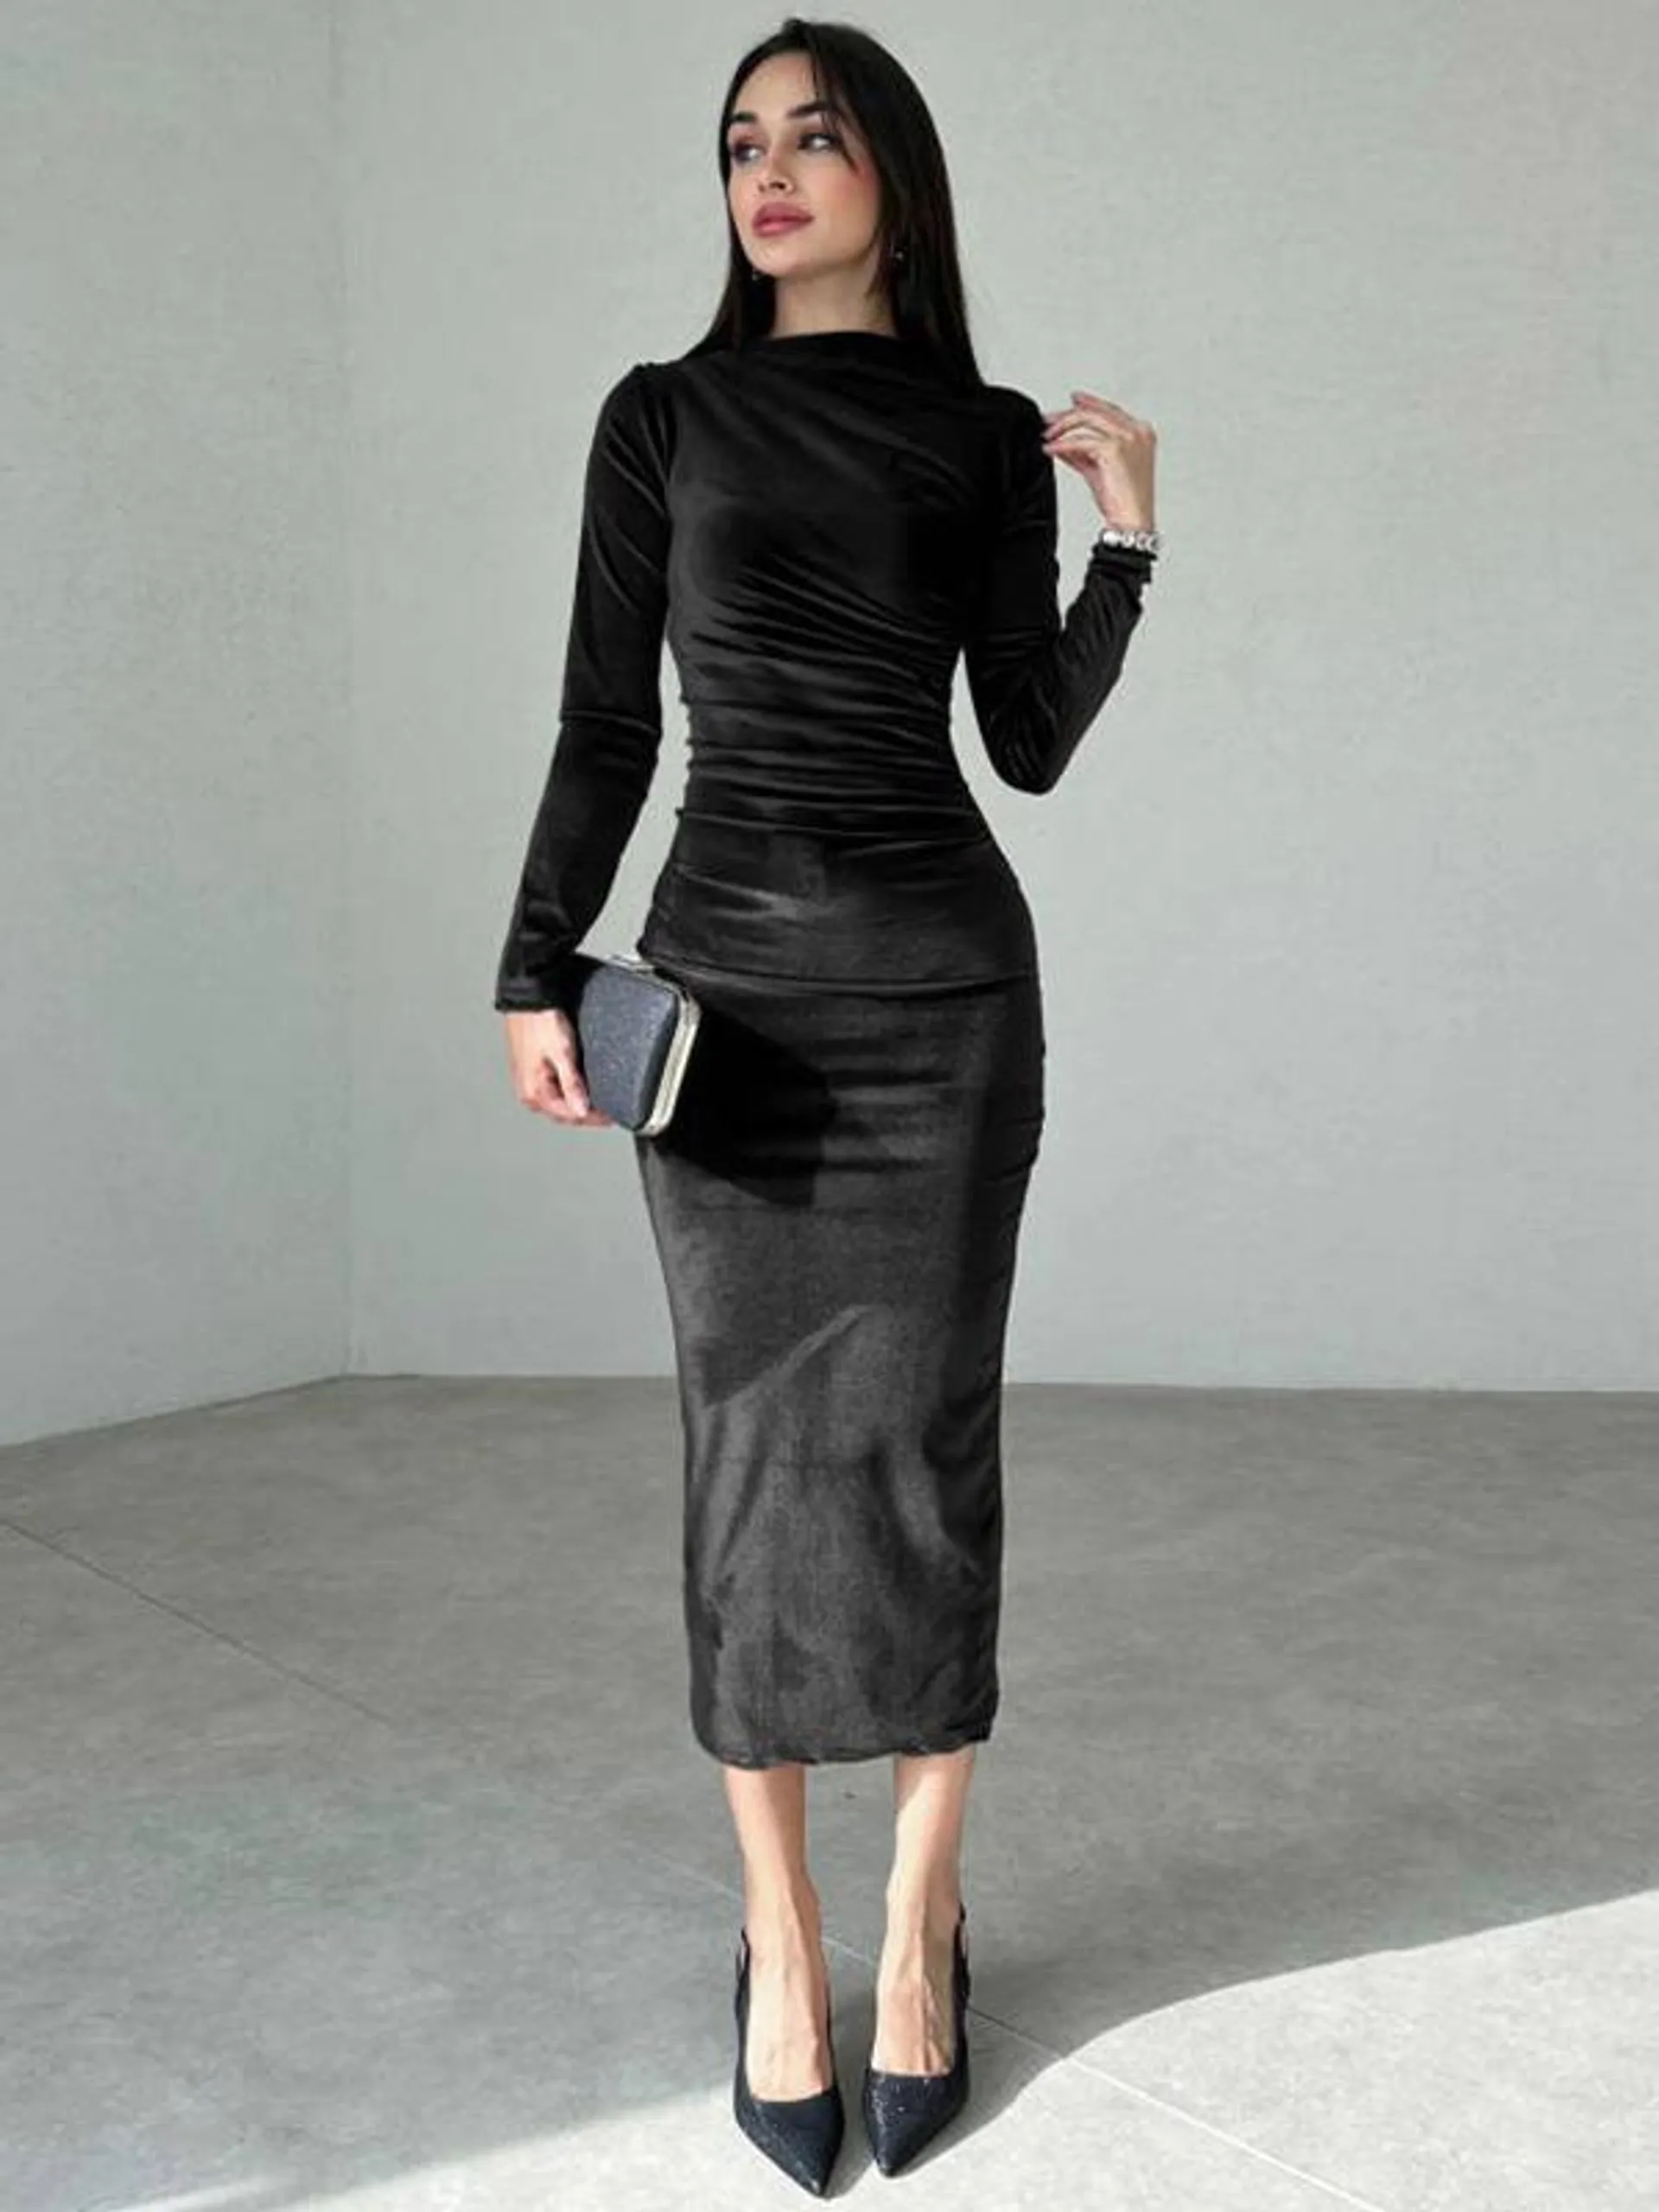 Velvet Dress Black Pleated Dating Long Sleeves Jewel Neck Summer Maxi Dresses